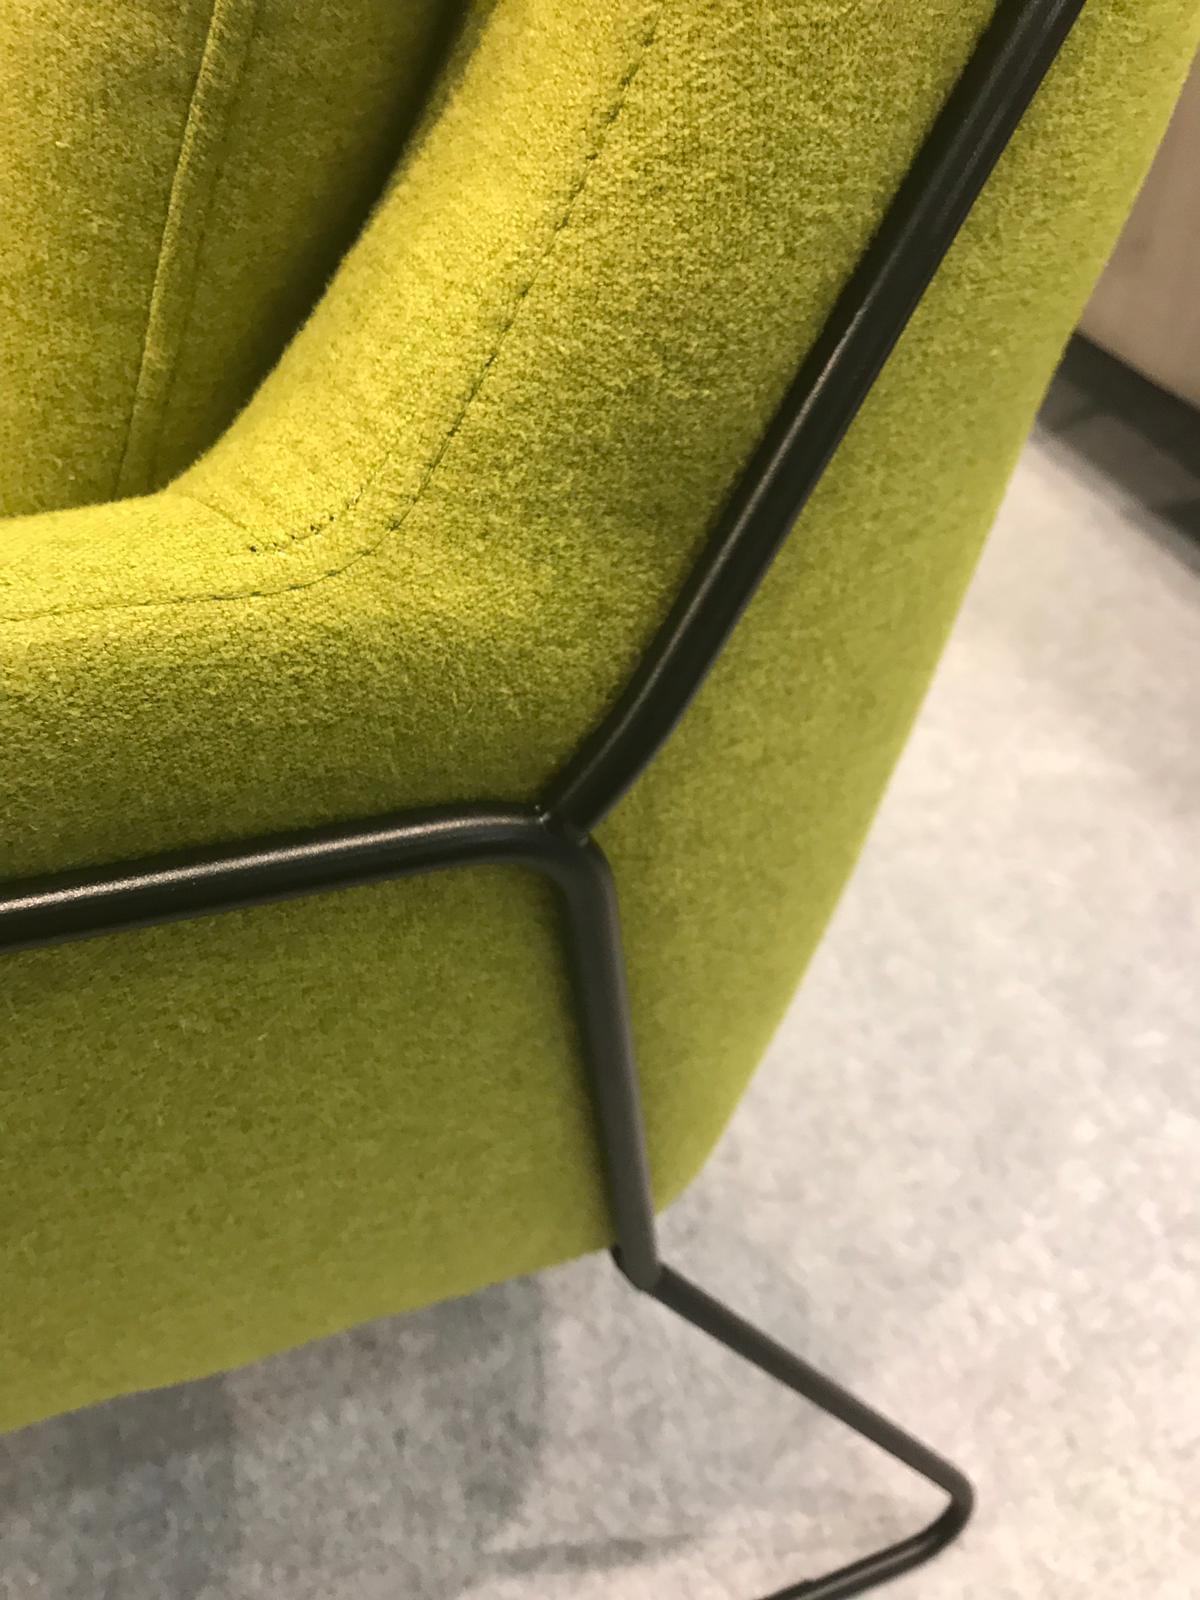 IMM-Cologne-black-exo-frame-on-green-upholstery.JPG#asset:180296